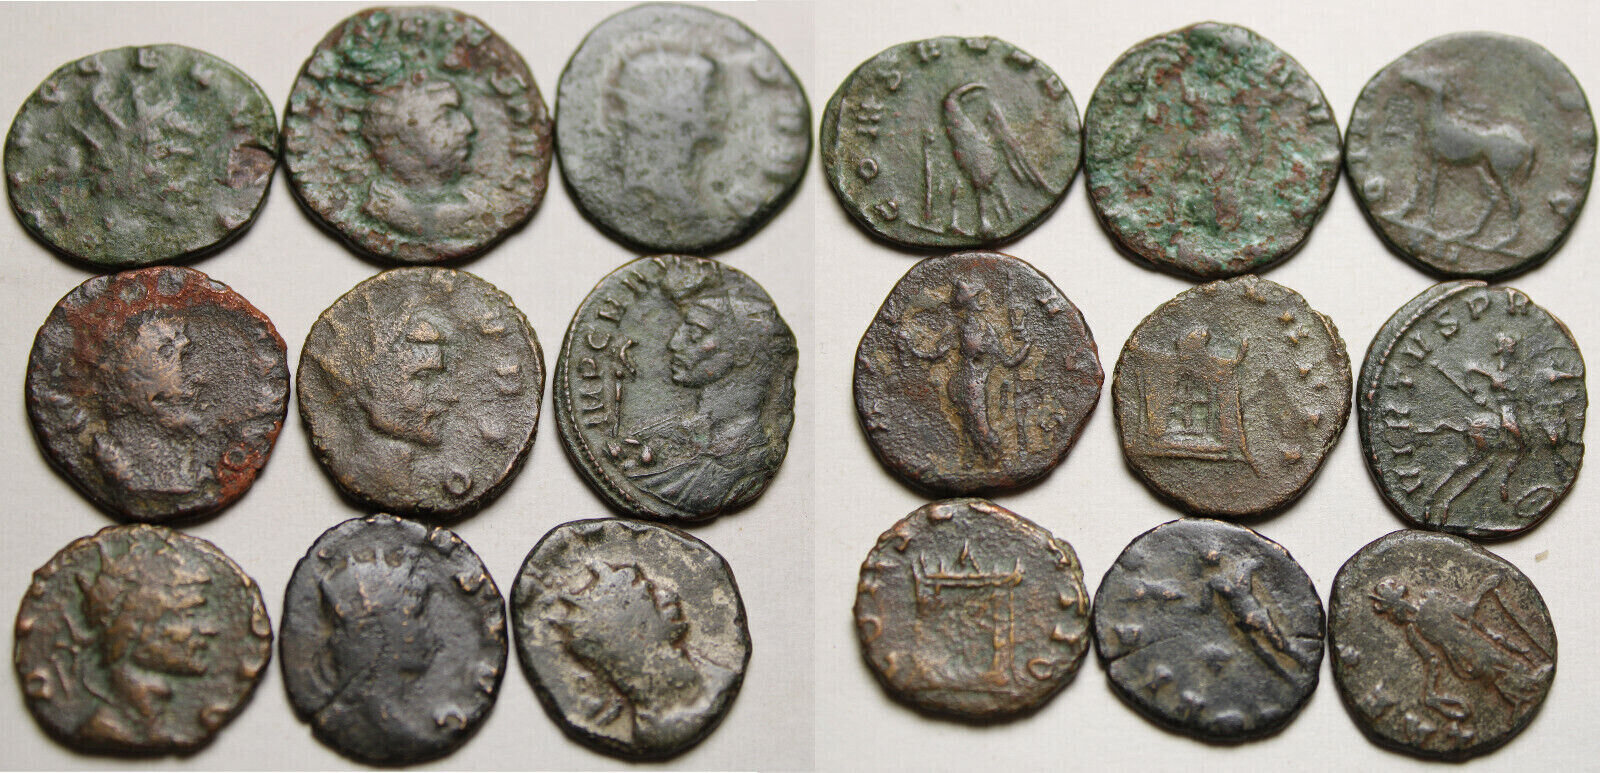 Lot of 9 Genuine Ancient Roman coins Probus Claudius Gallienus Valerian Tetricus Без бренда